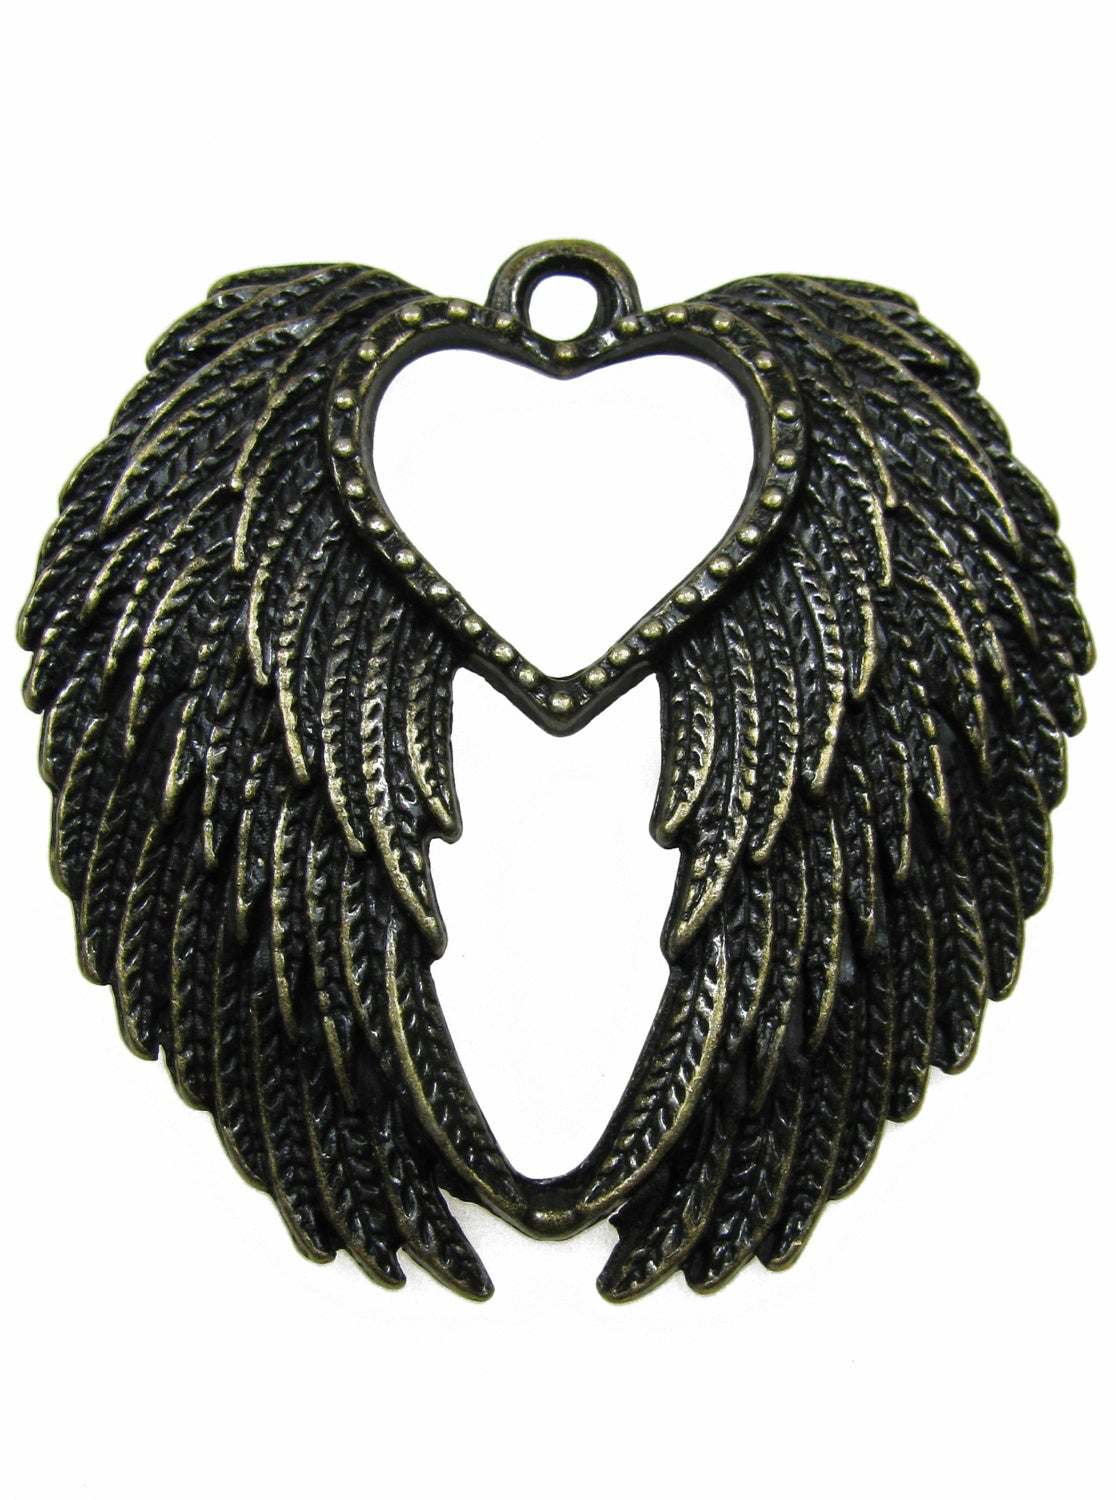 Anhänger Flügel mit Herz bronzefarben, 4,4cm, Schmuck, Perlen basteln, Schwingen